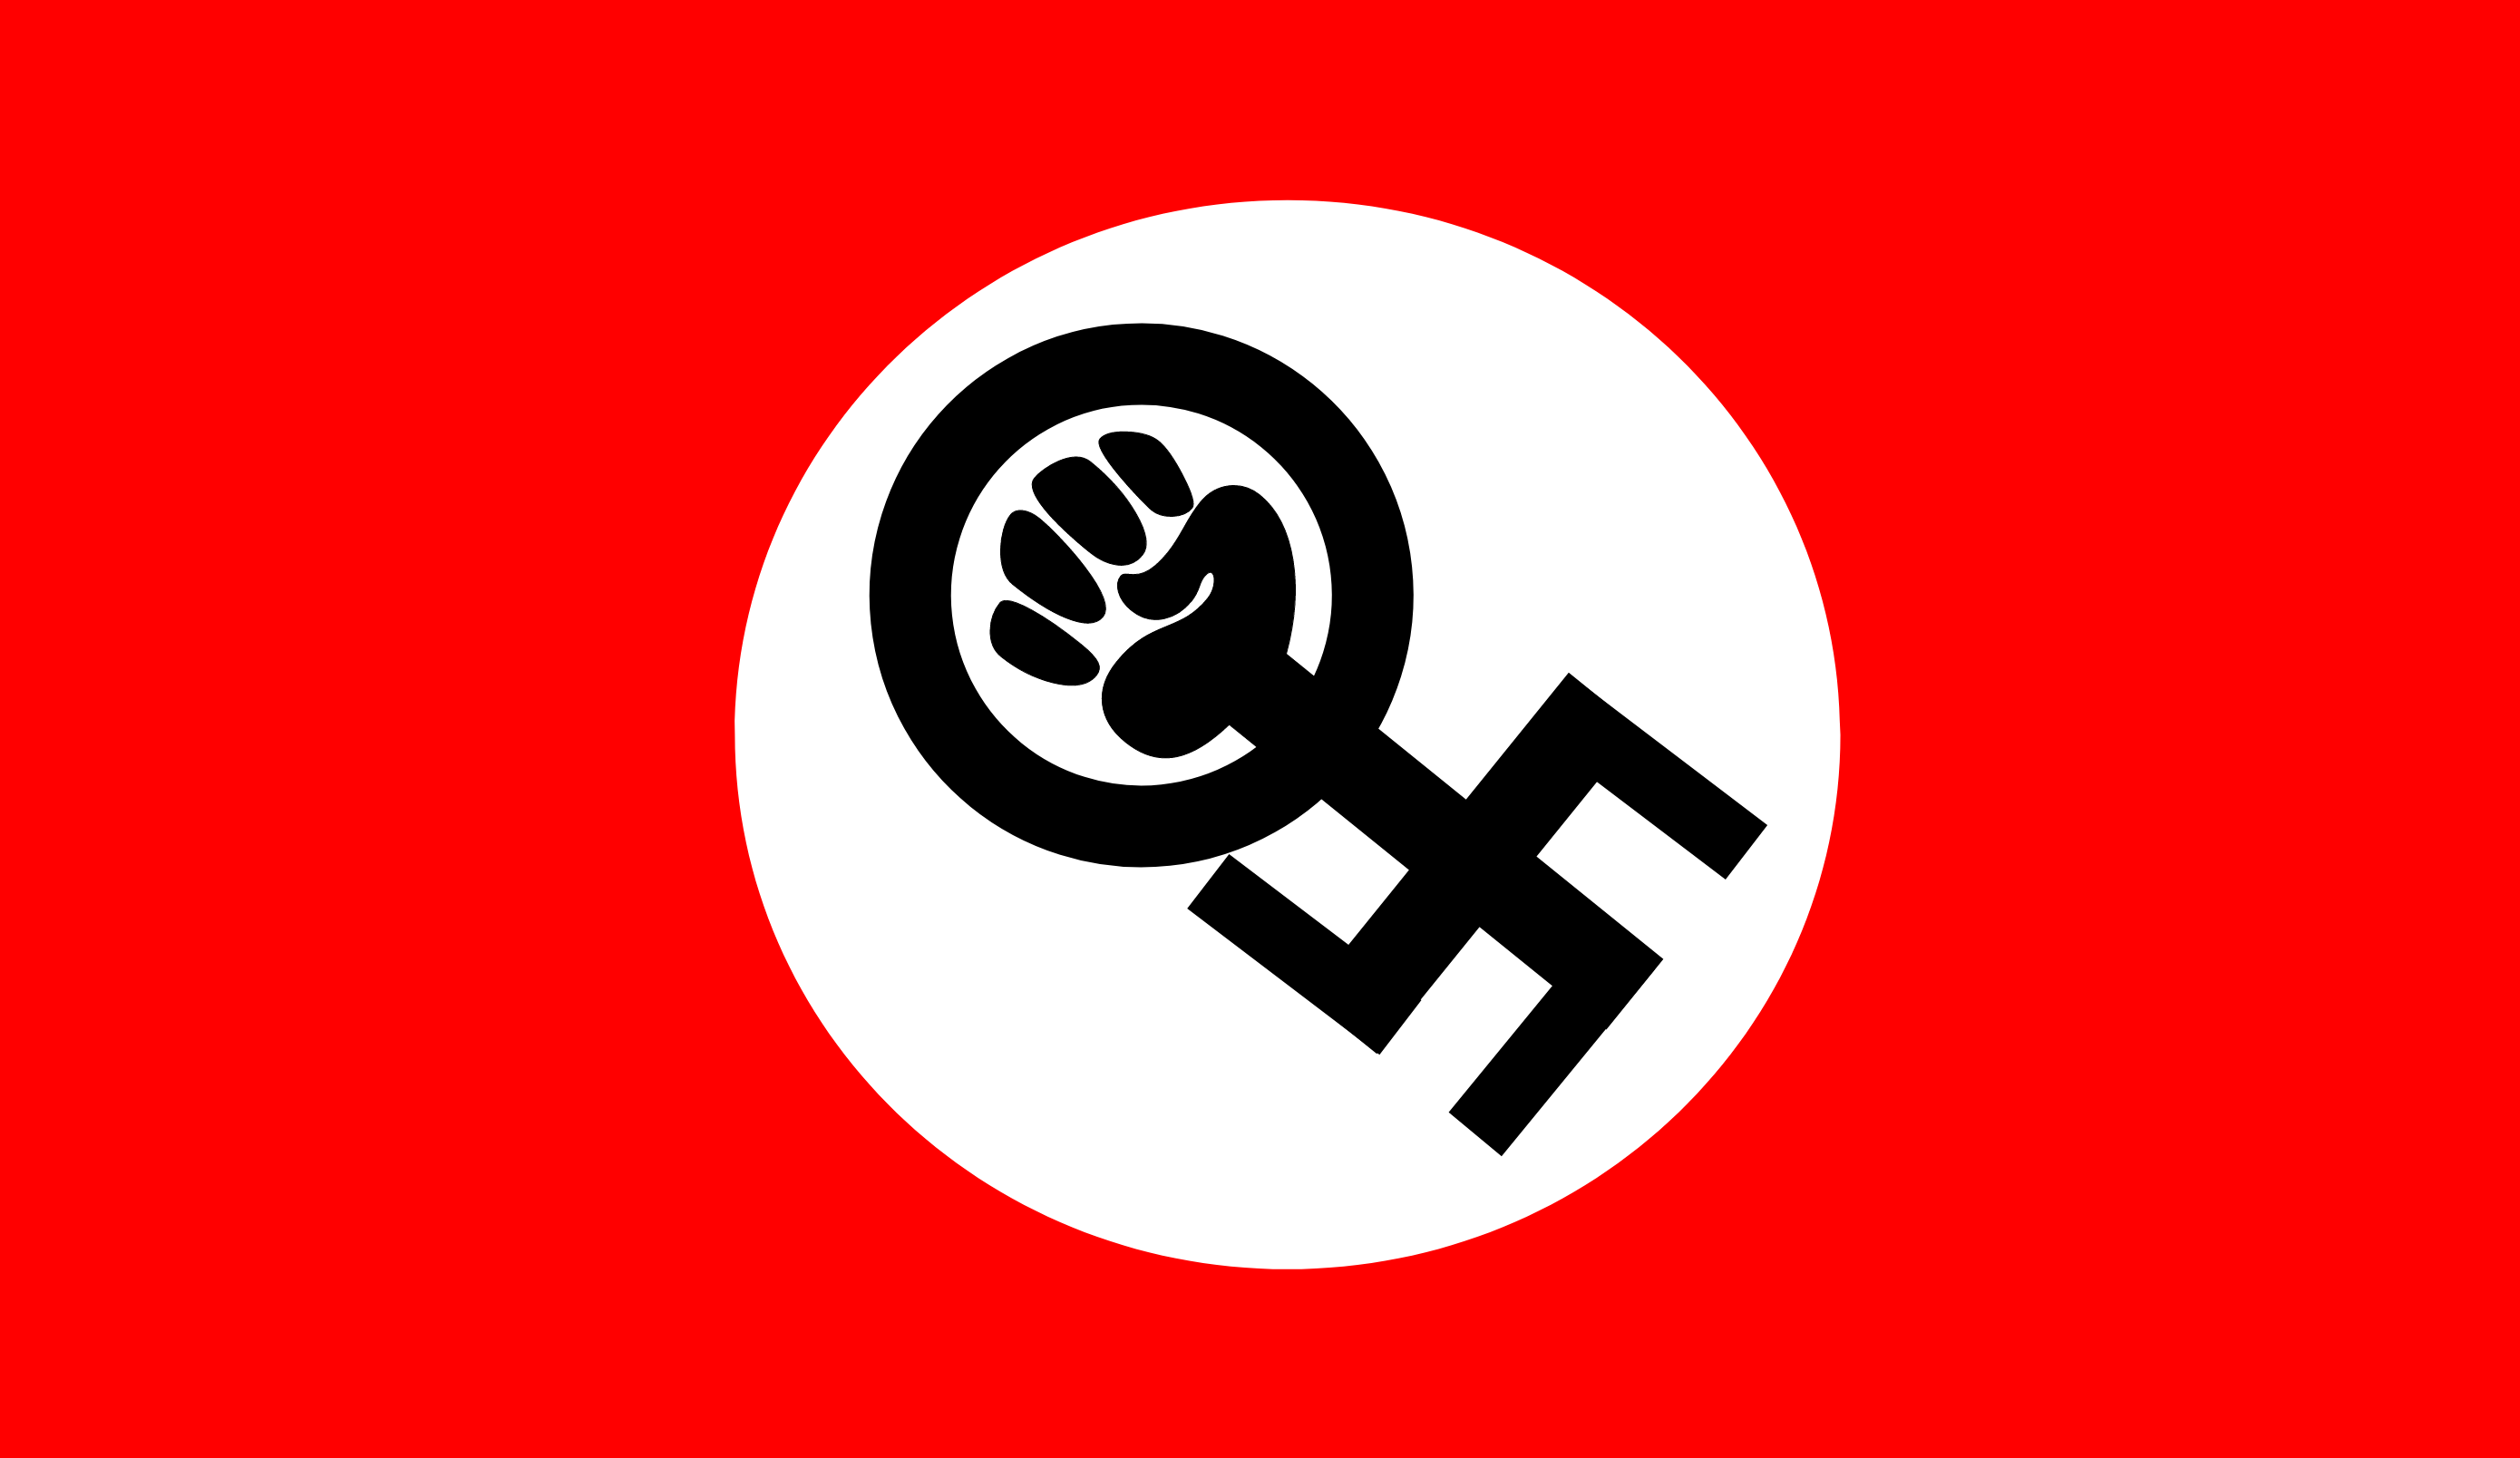 Эмблема феминизма. Символ феминизма. Флаг феминизма